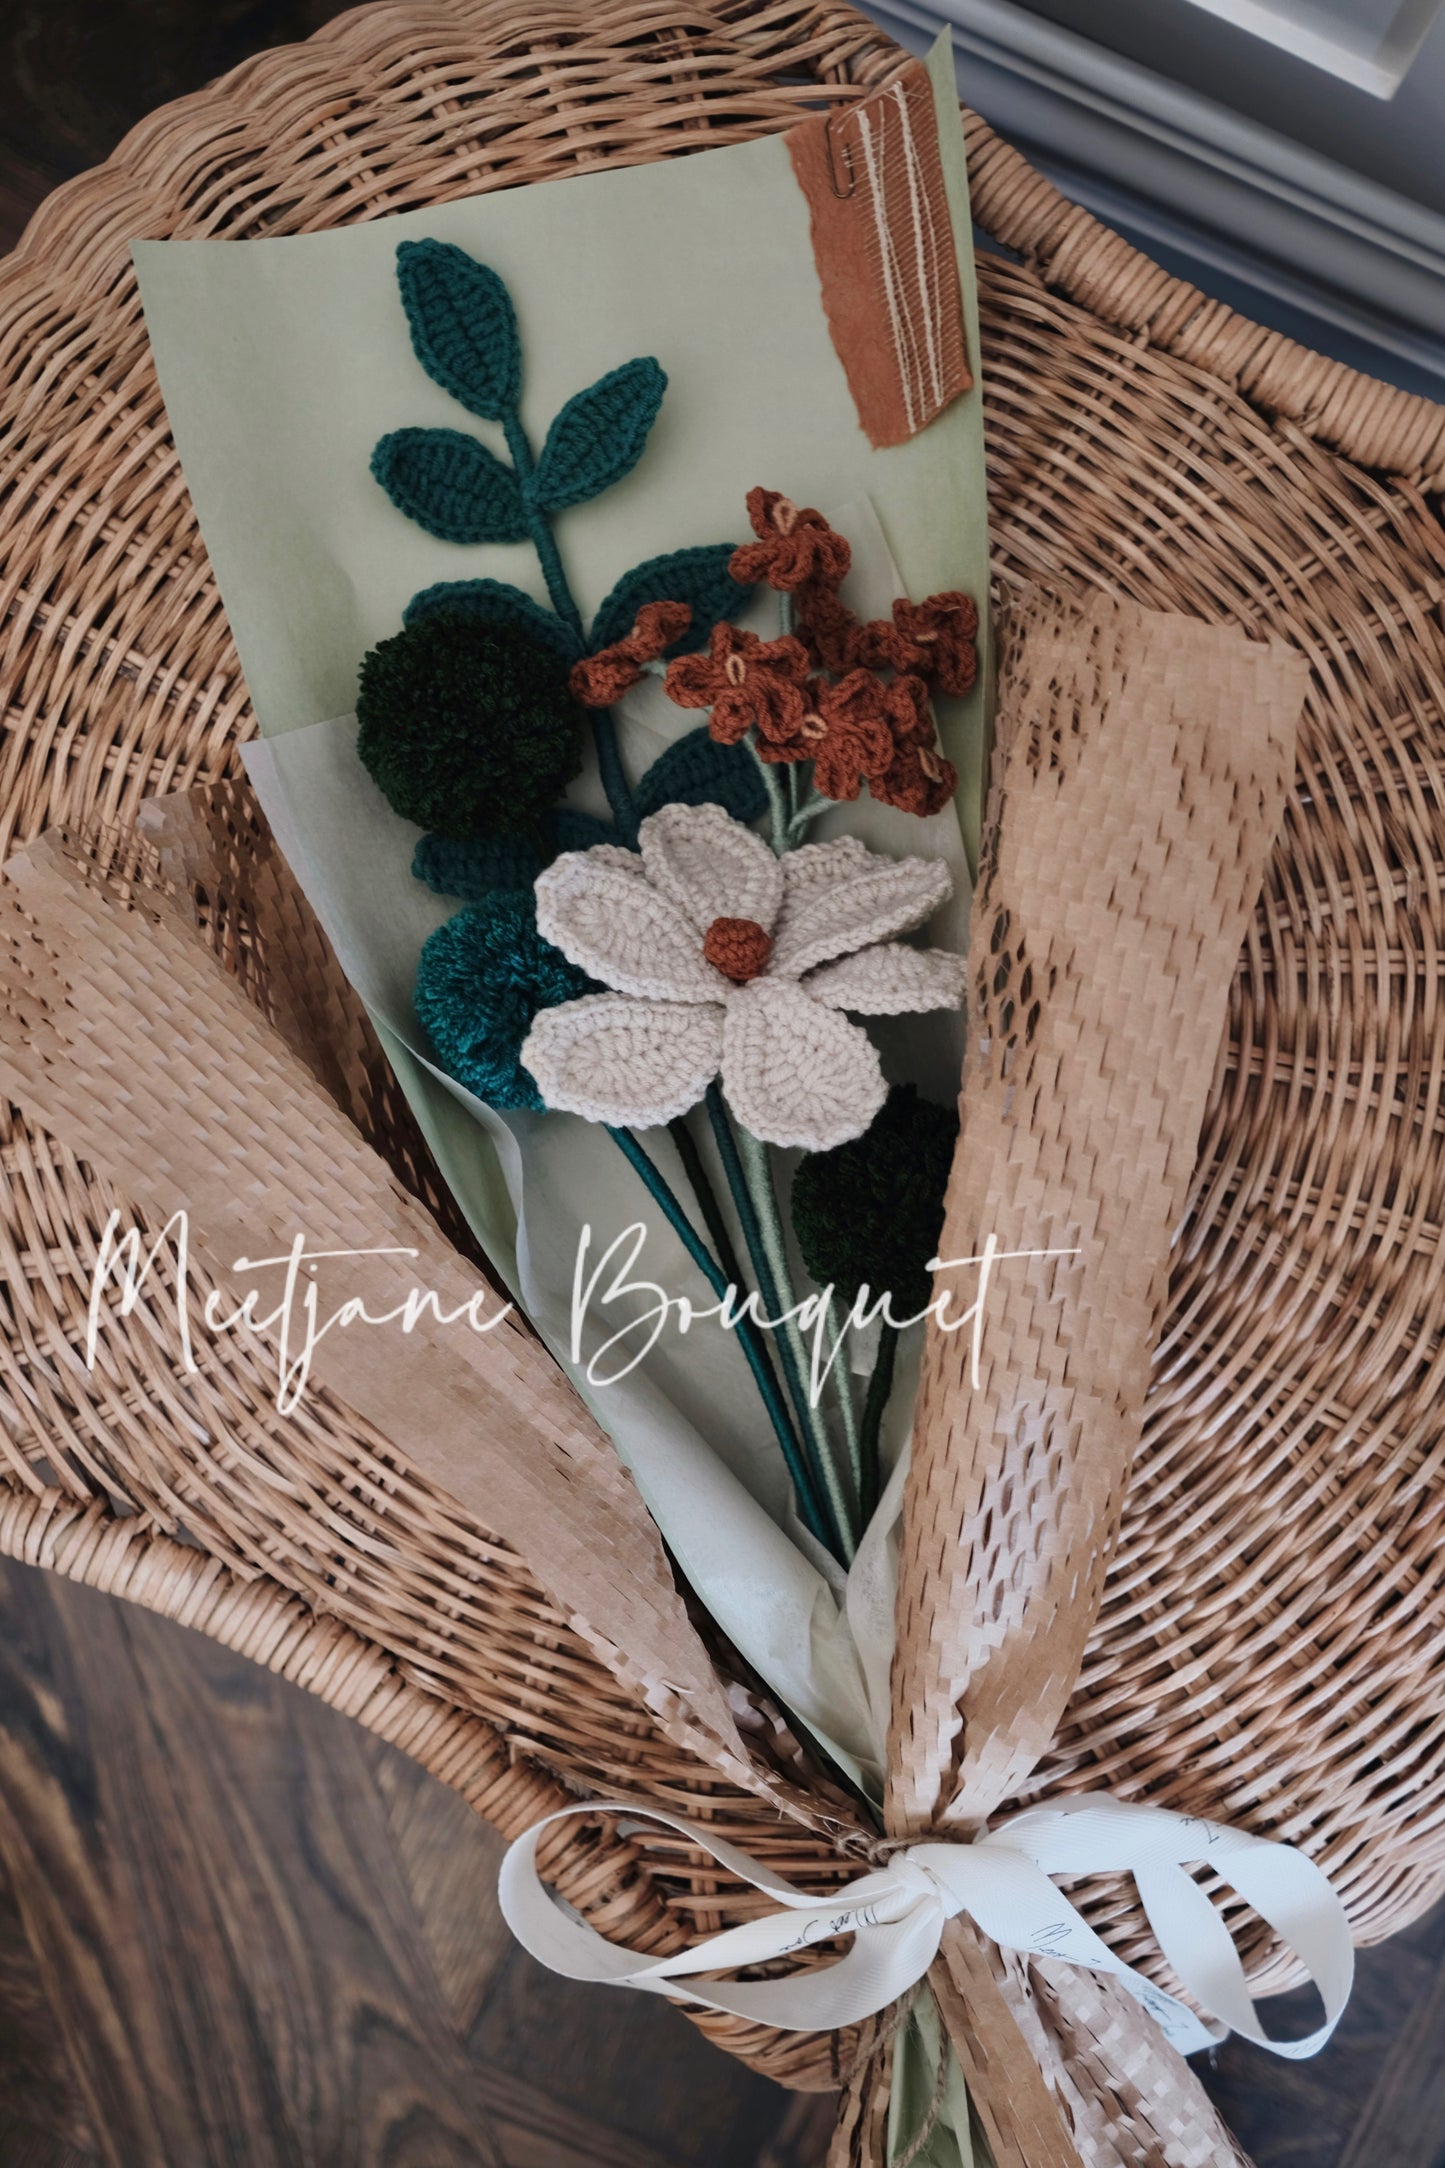 Meetjane Bouquet|Melbourne handmade |Graduation gift|Kelsang Flowers